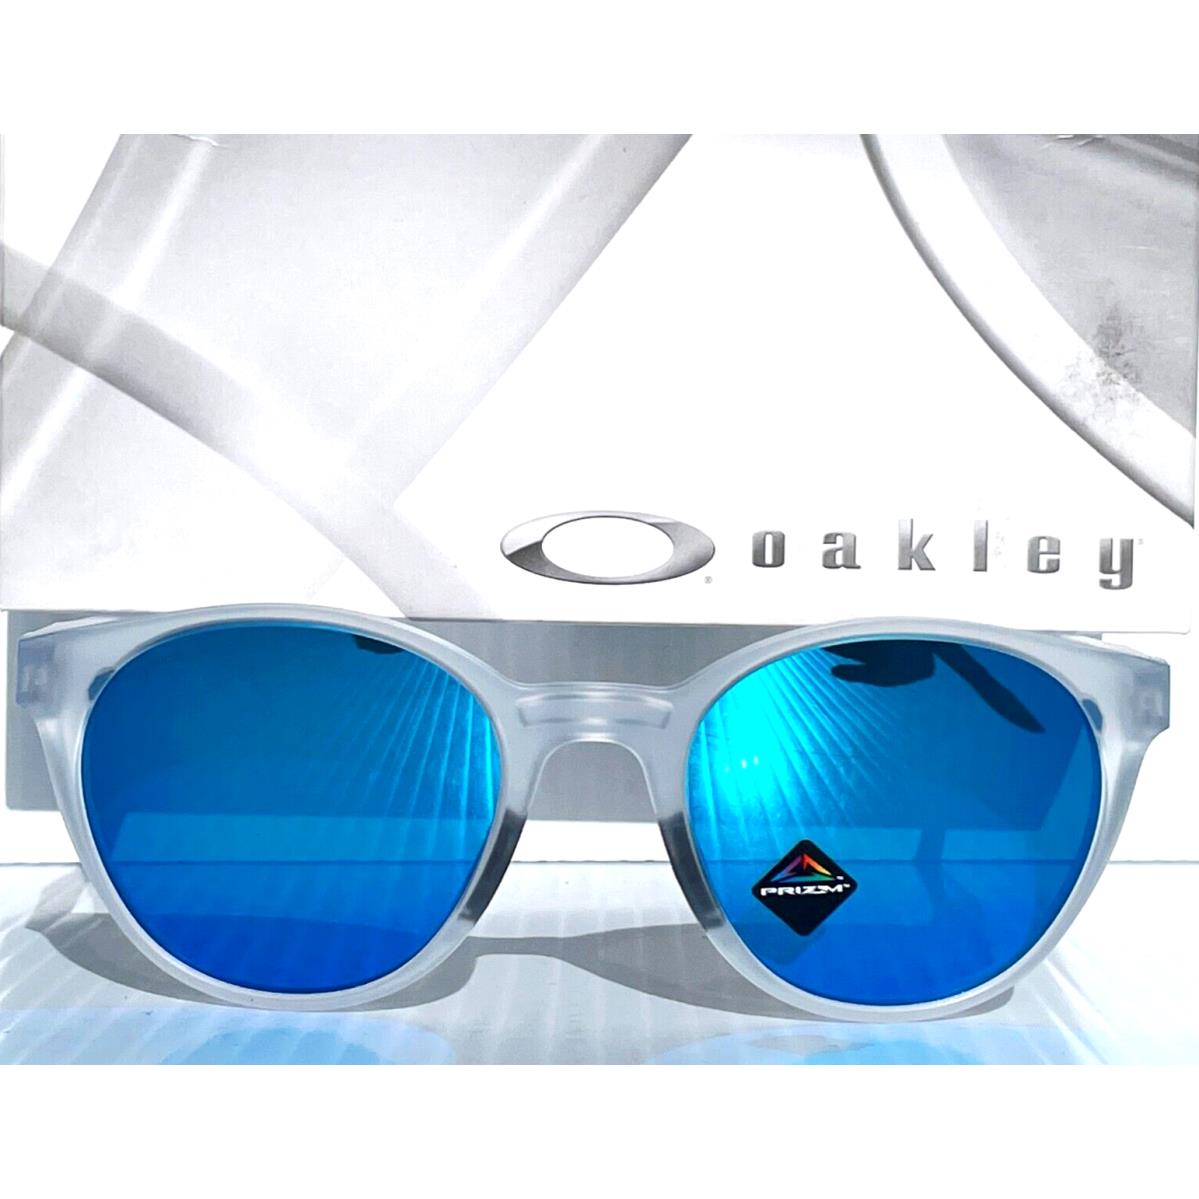 Oakley sunglasses Spindrift - Frame: , Lens: Blue 0